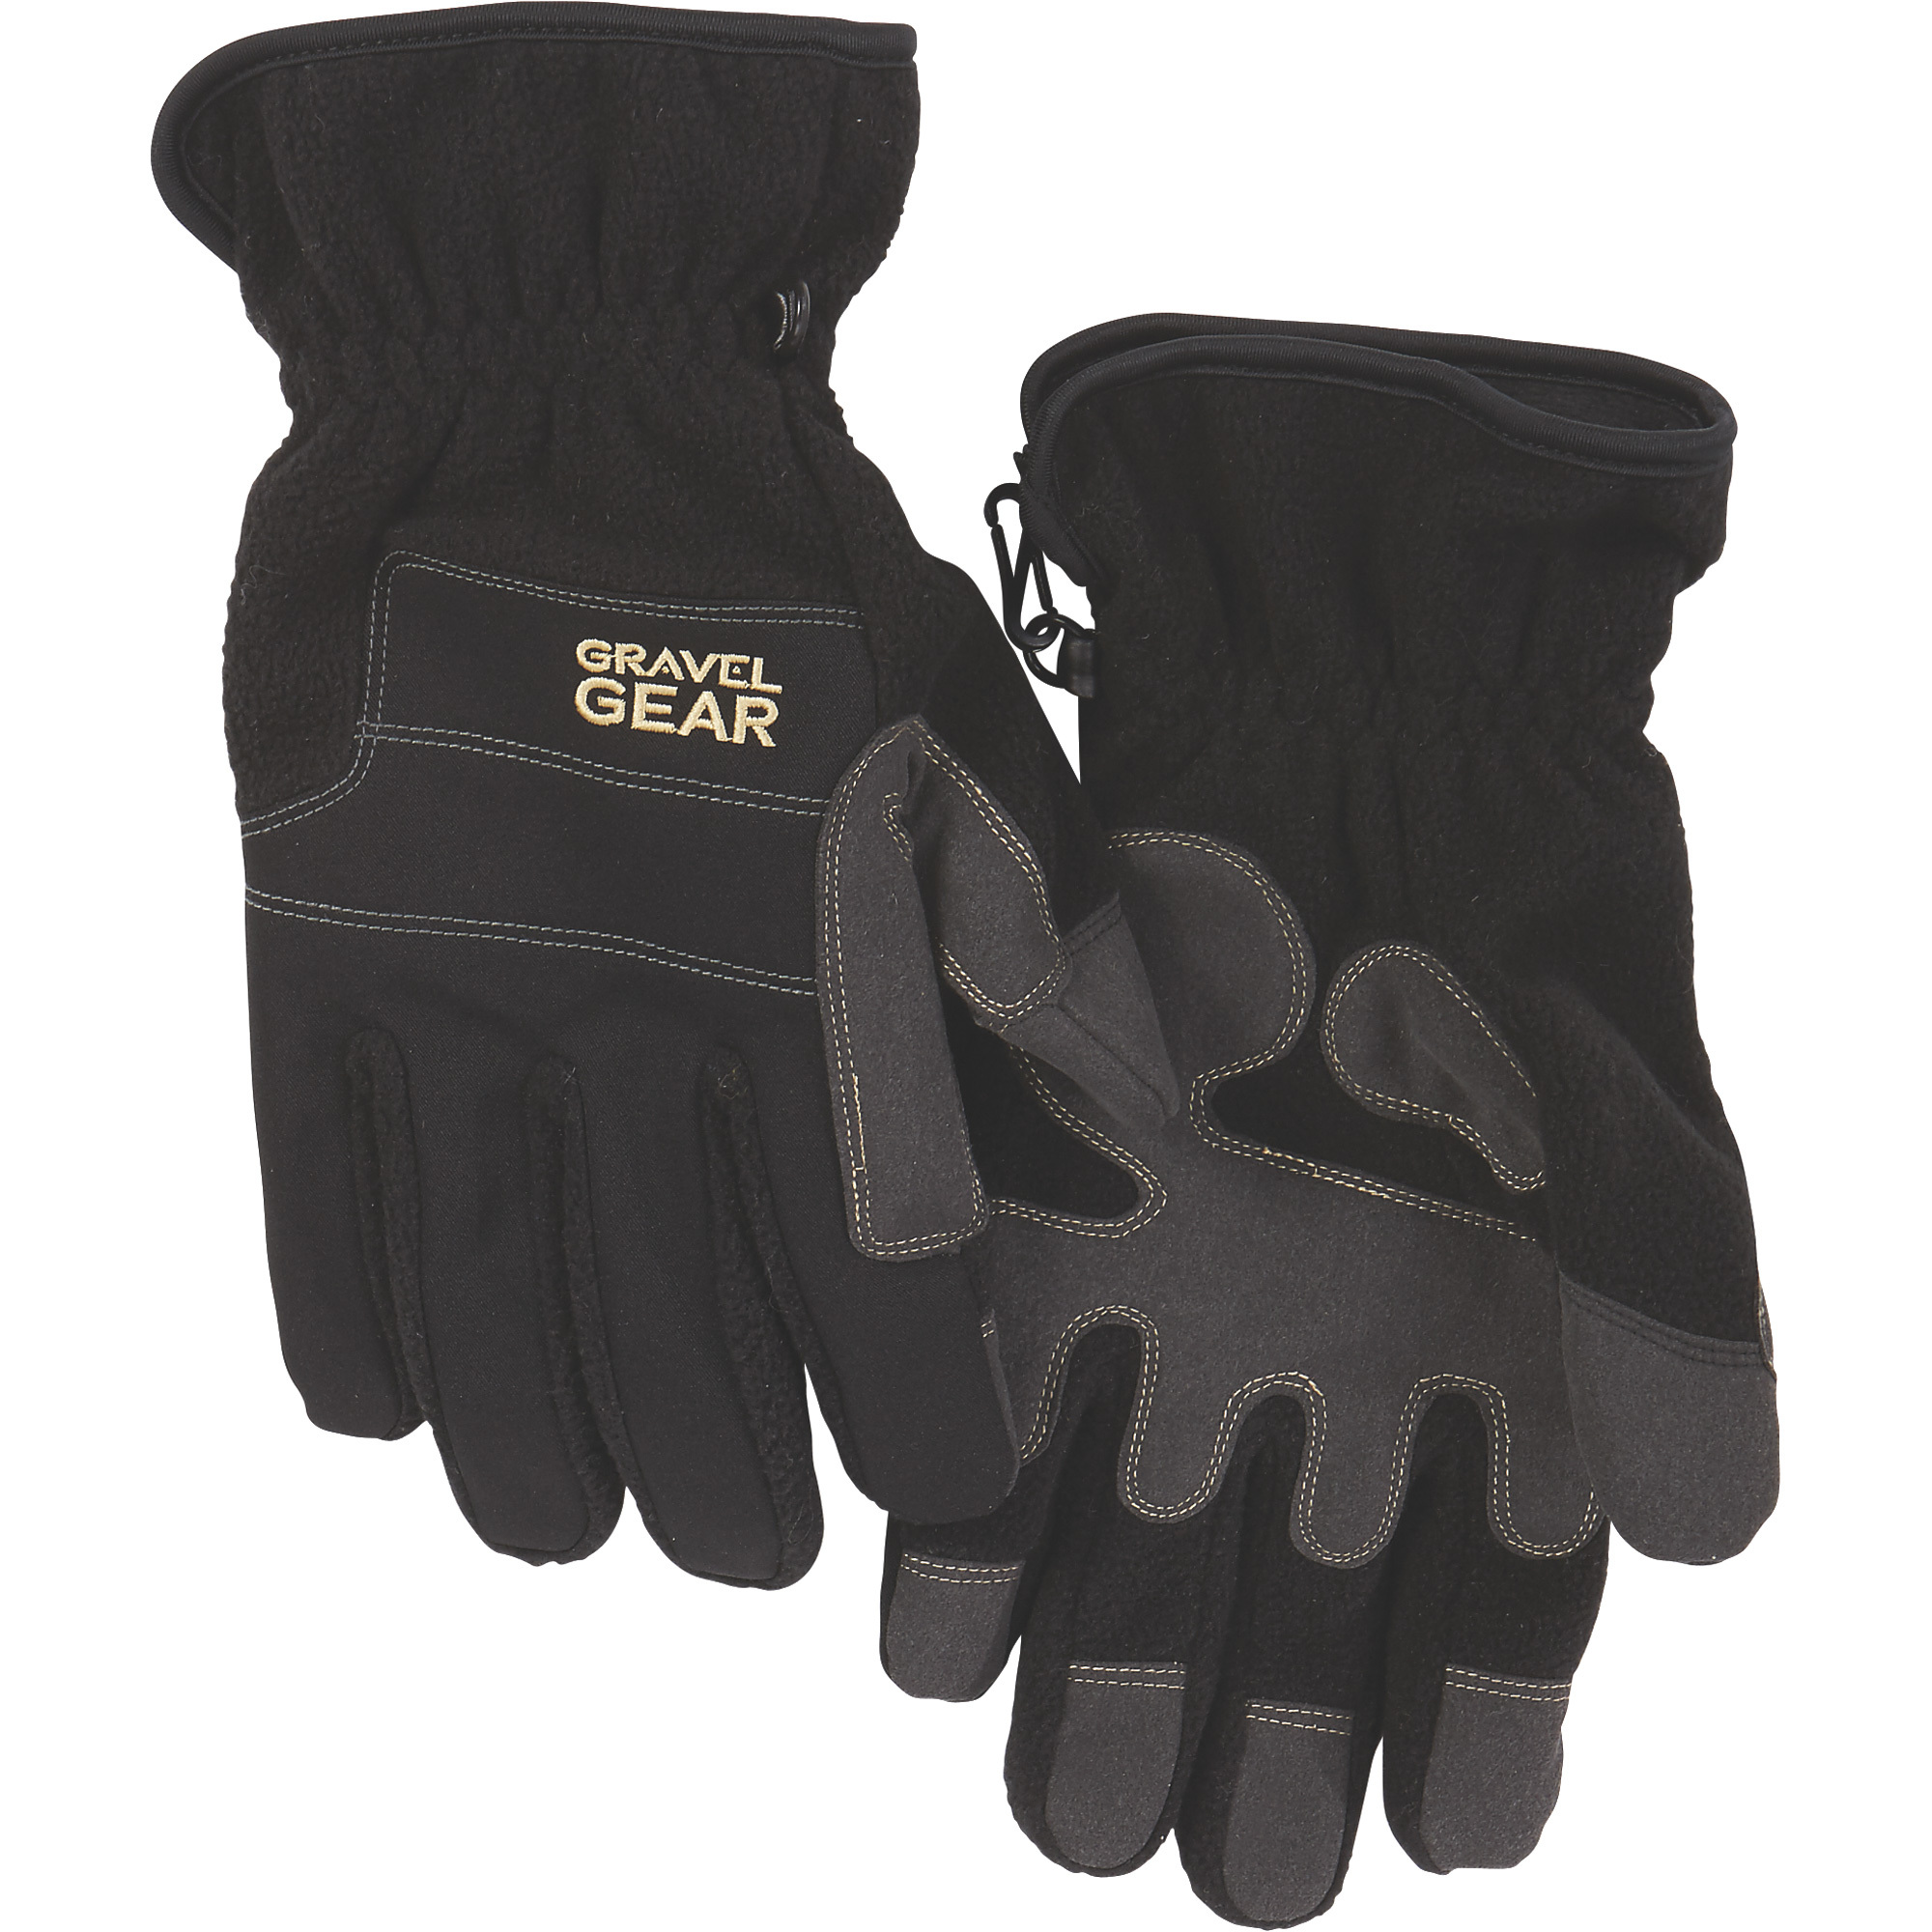 Gravel Gear Men's Tech Fleece Gloves with Thinsulate â Black, 2XL